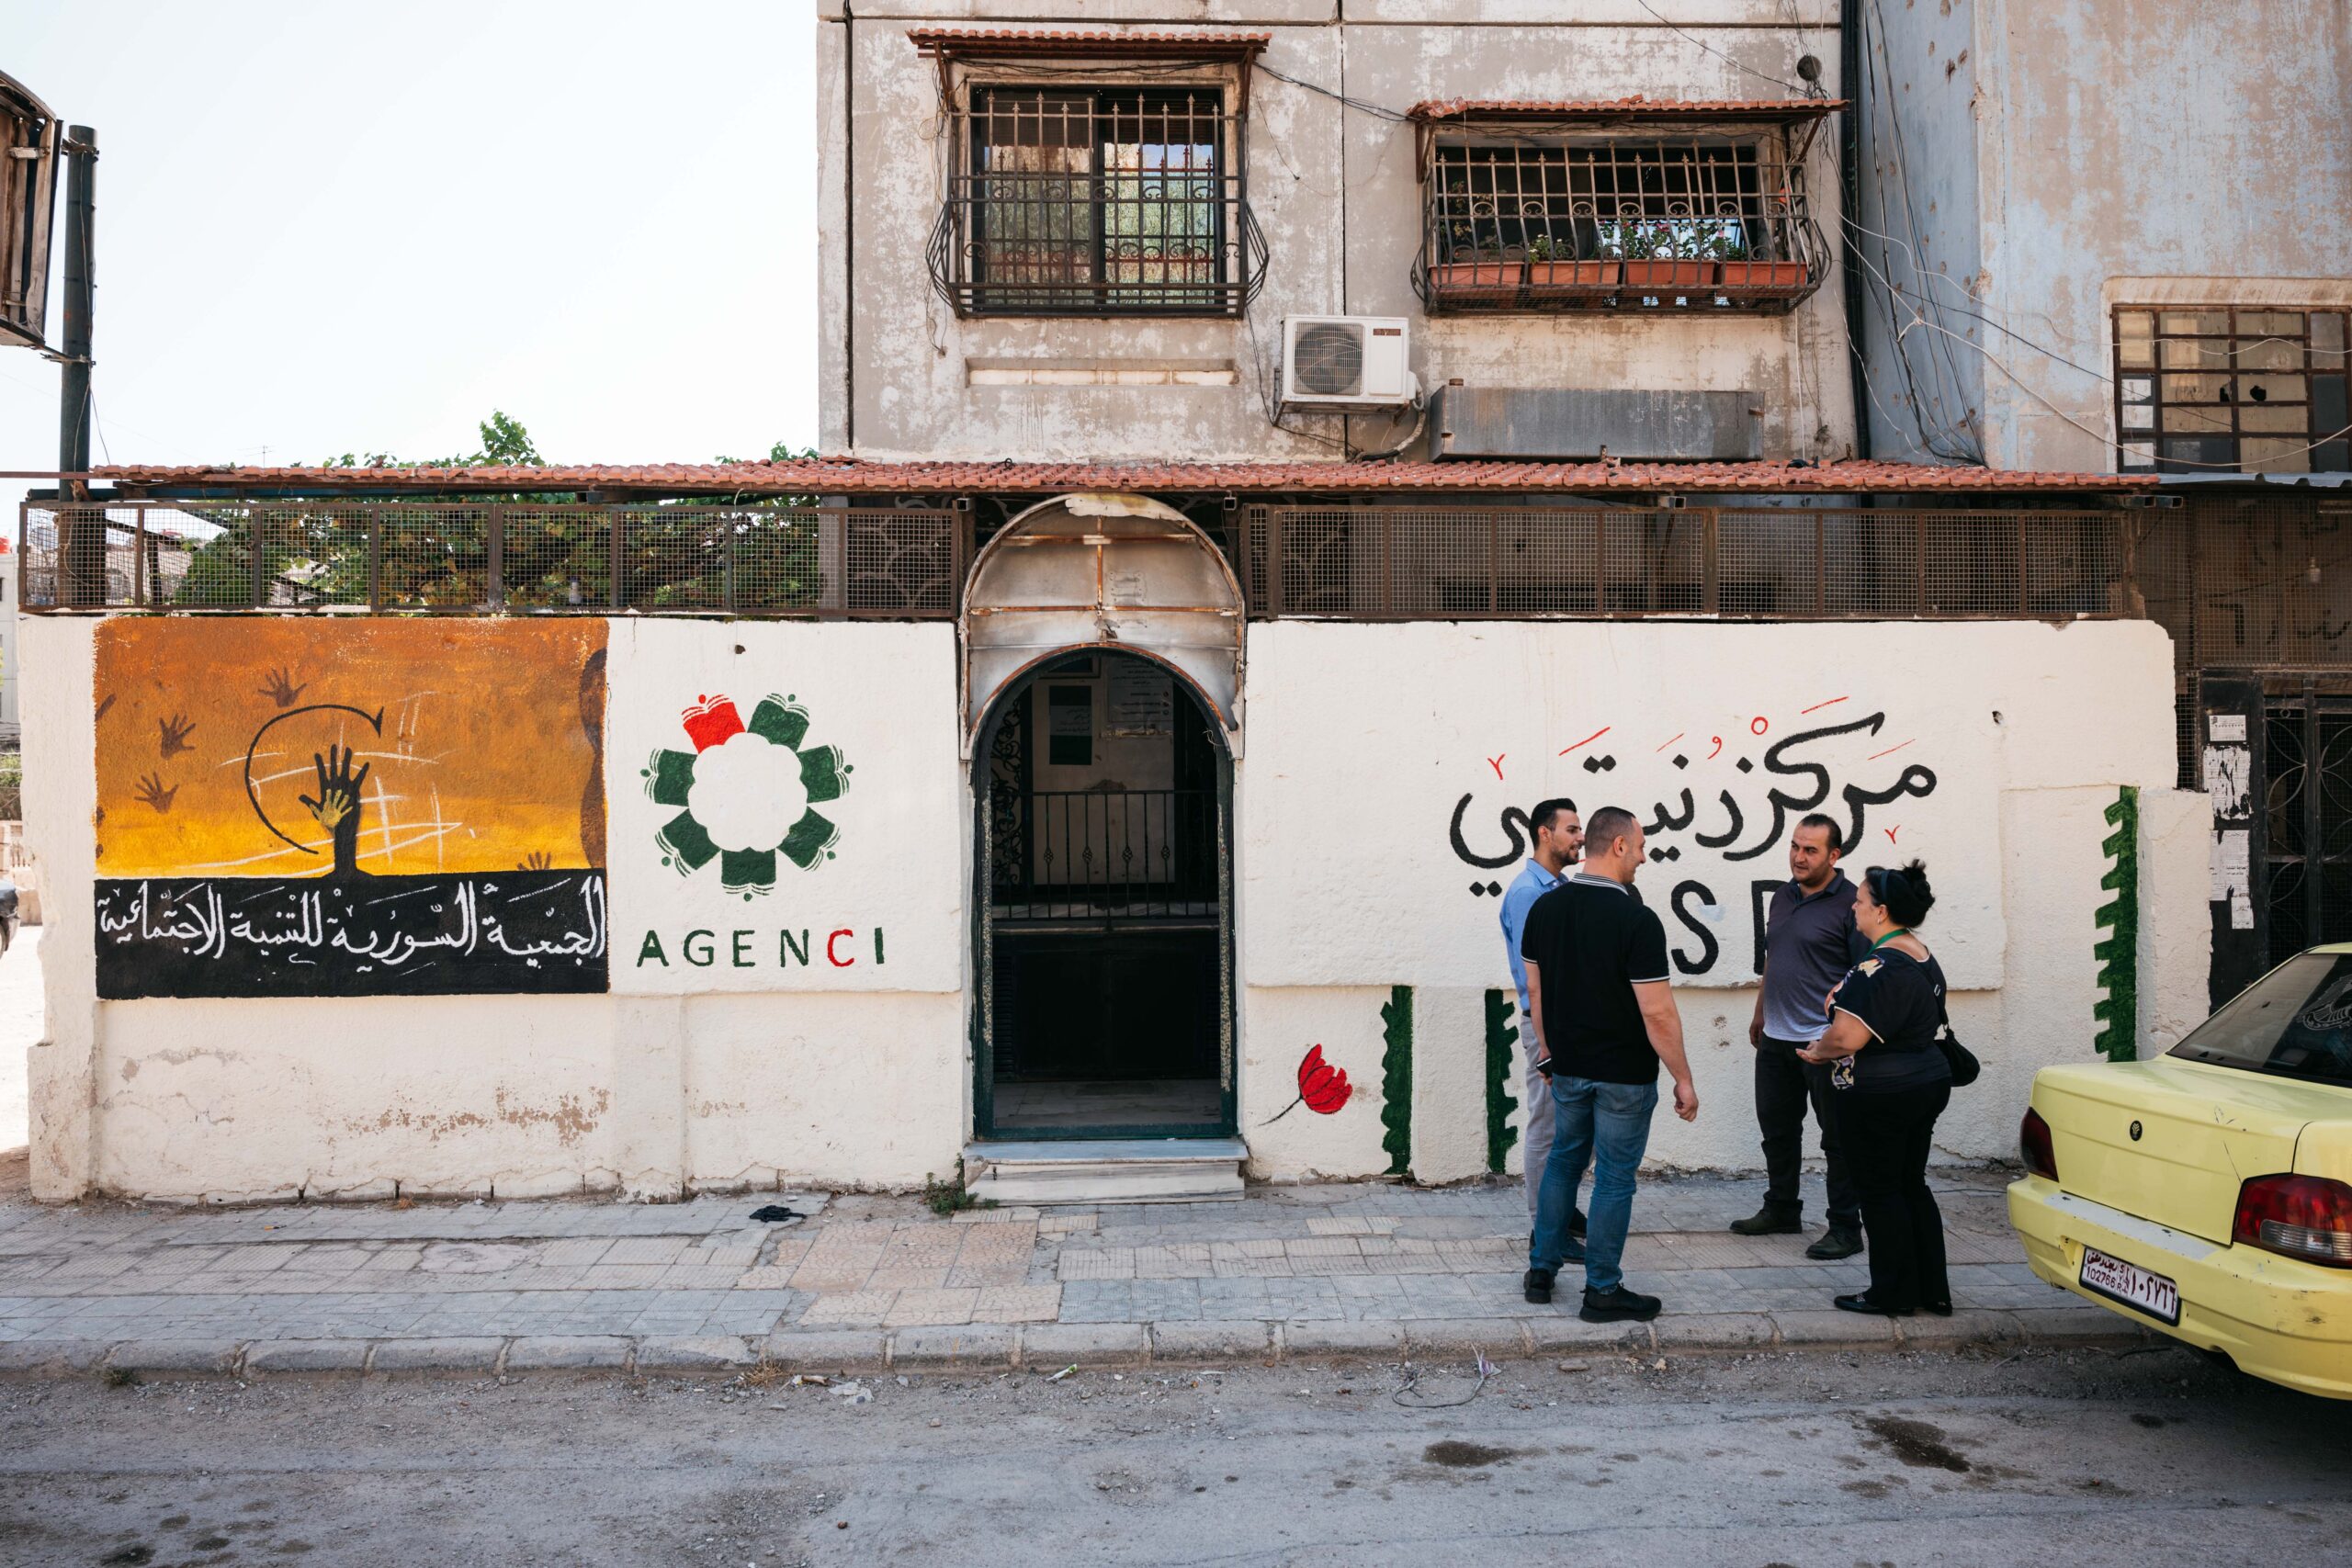 The AGENCI centre in Syria.